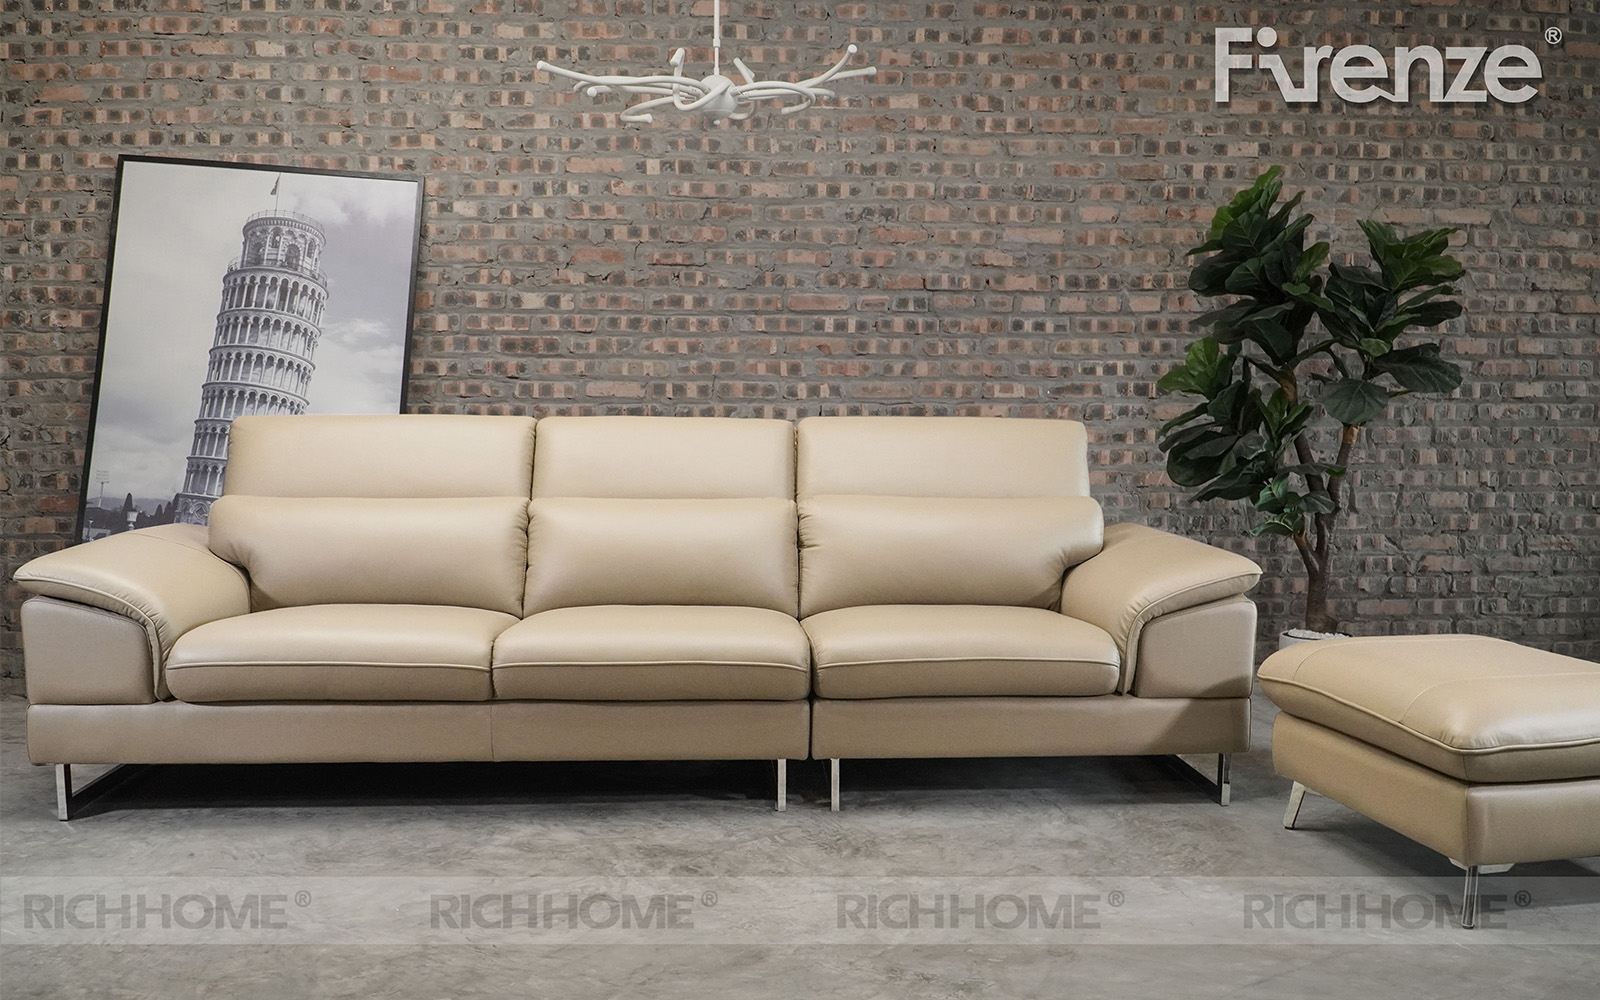 Dòng sofa văng da đẹp 3 lòng ngồi hàng nhập khẩu, chất lượng cao - Ảnh 4